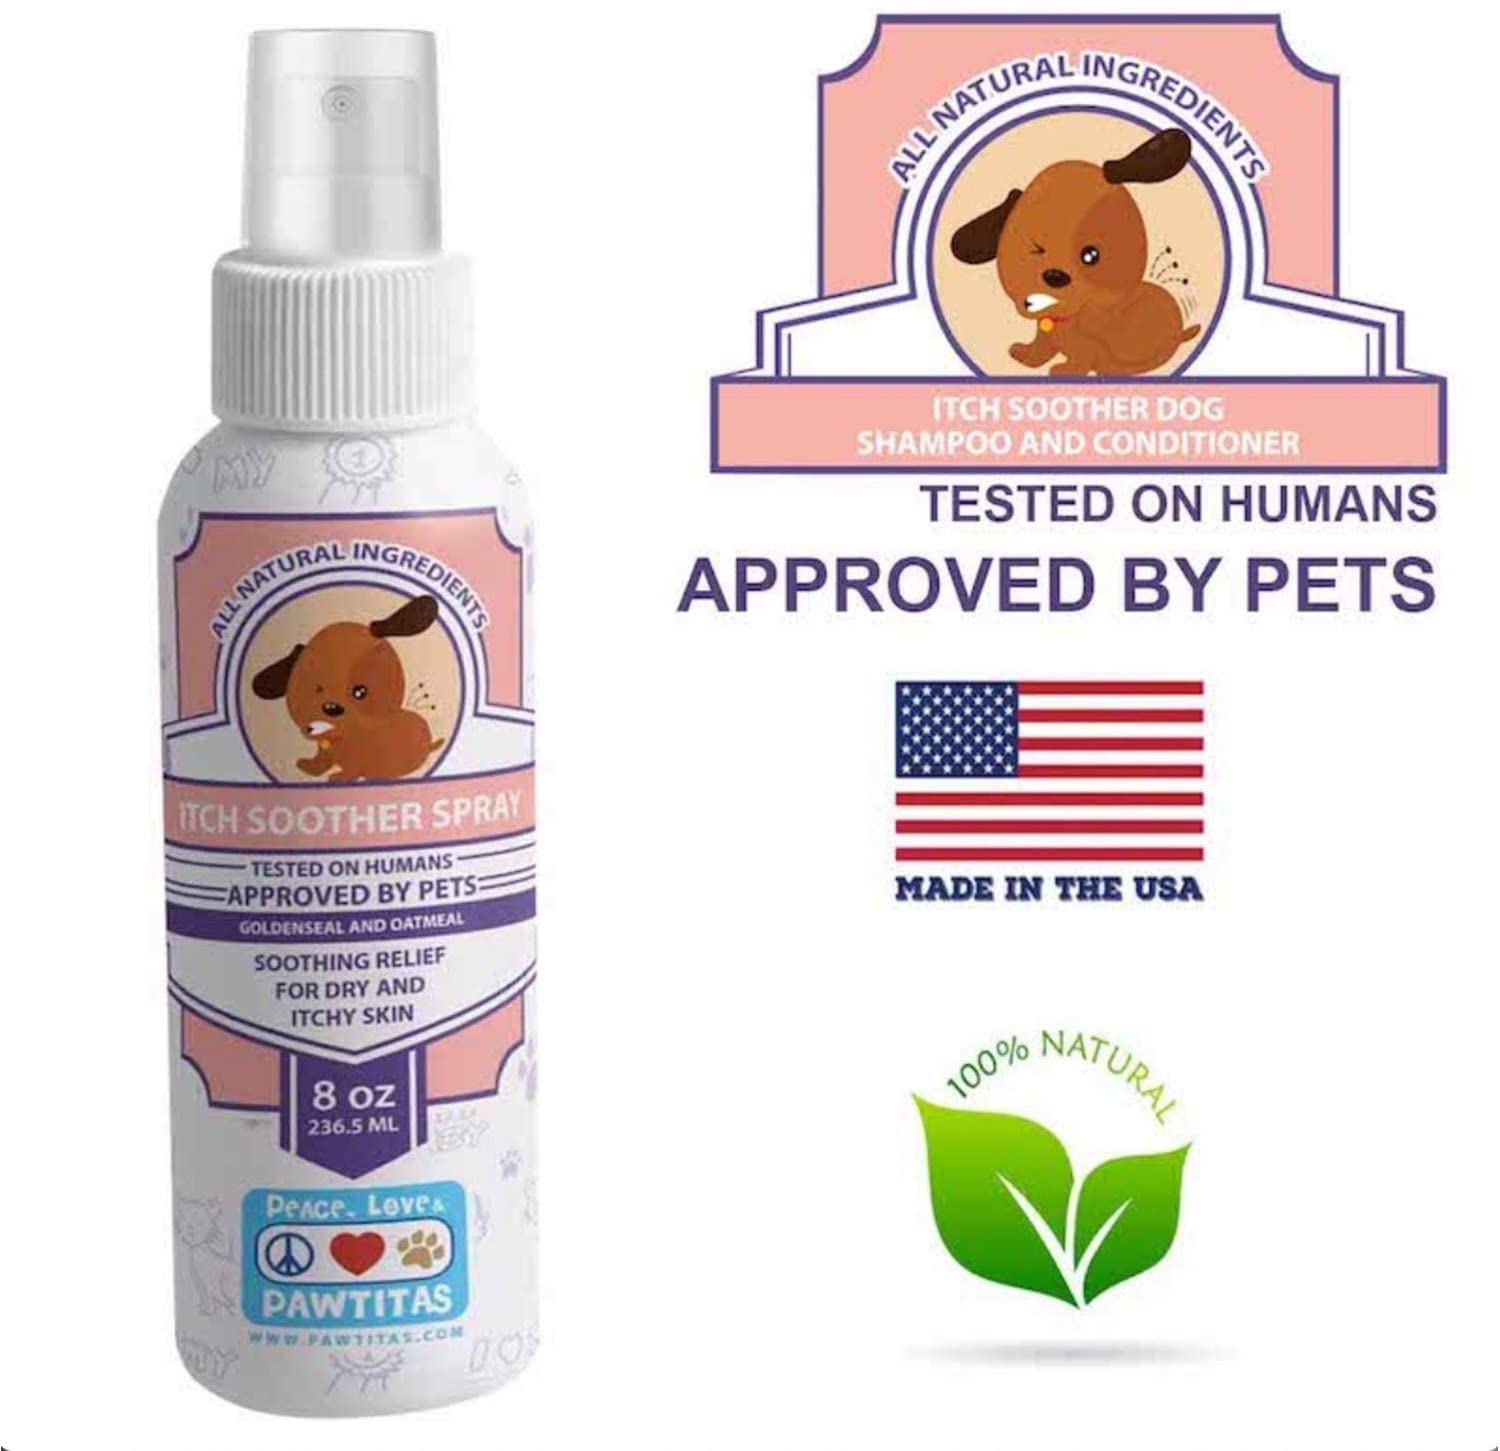  Pawtitas Spray para Dermatitis del Perro Alivia Rapidamente el Picor del Perro | Calmante Hipoalergénico para garrapatas, pulgas, picores Locion Topica para la Piel de tu Perro y Cachorro - 2 OZ 